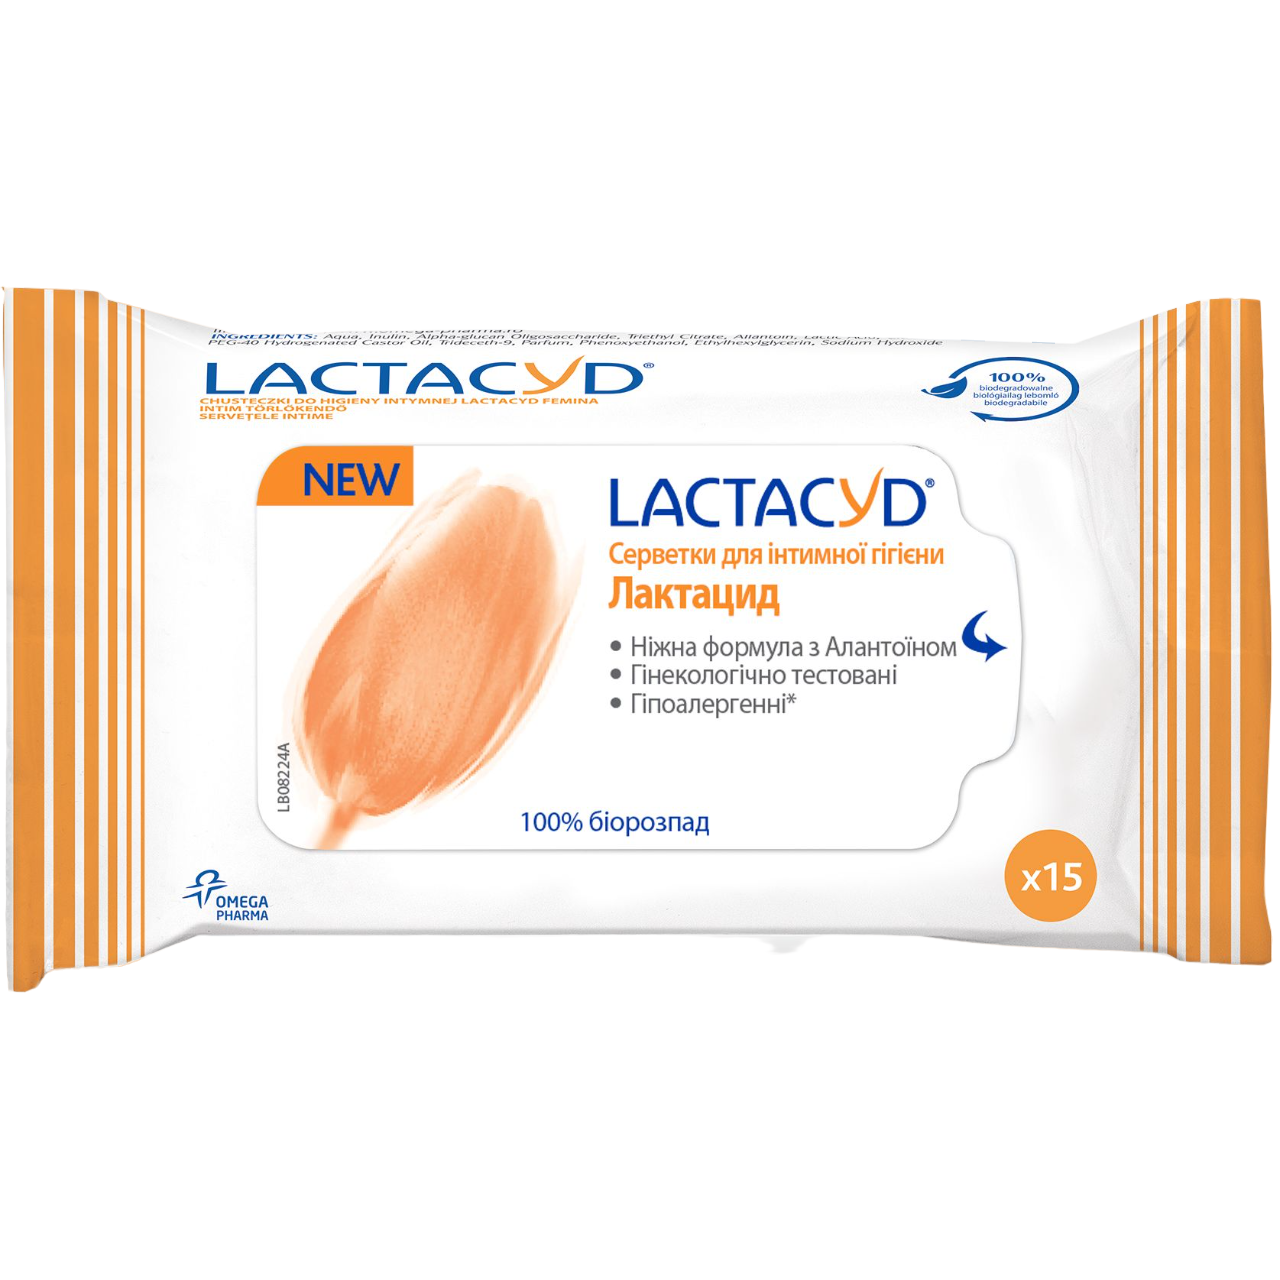 Photos - Soap / Hand Sanitiser Lactacyd Серветки для інтимної гігієни , 15 шт. 